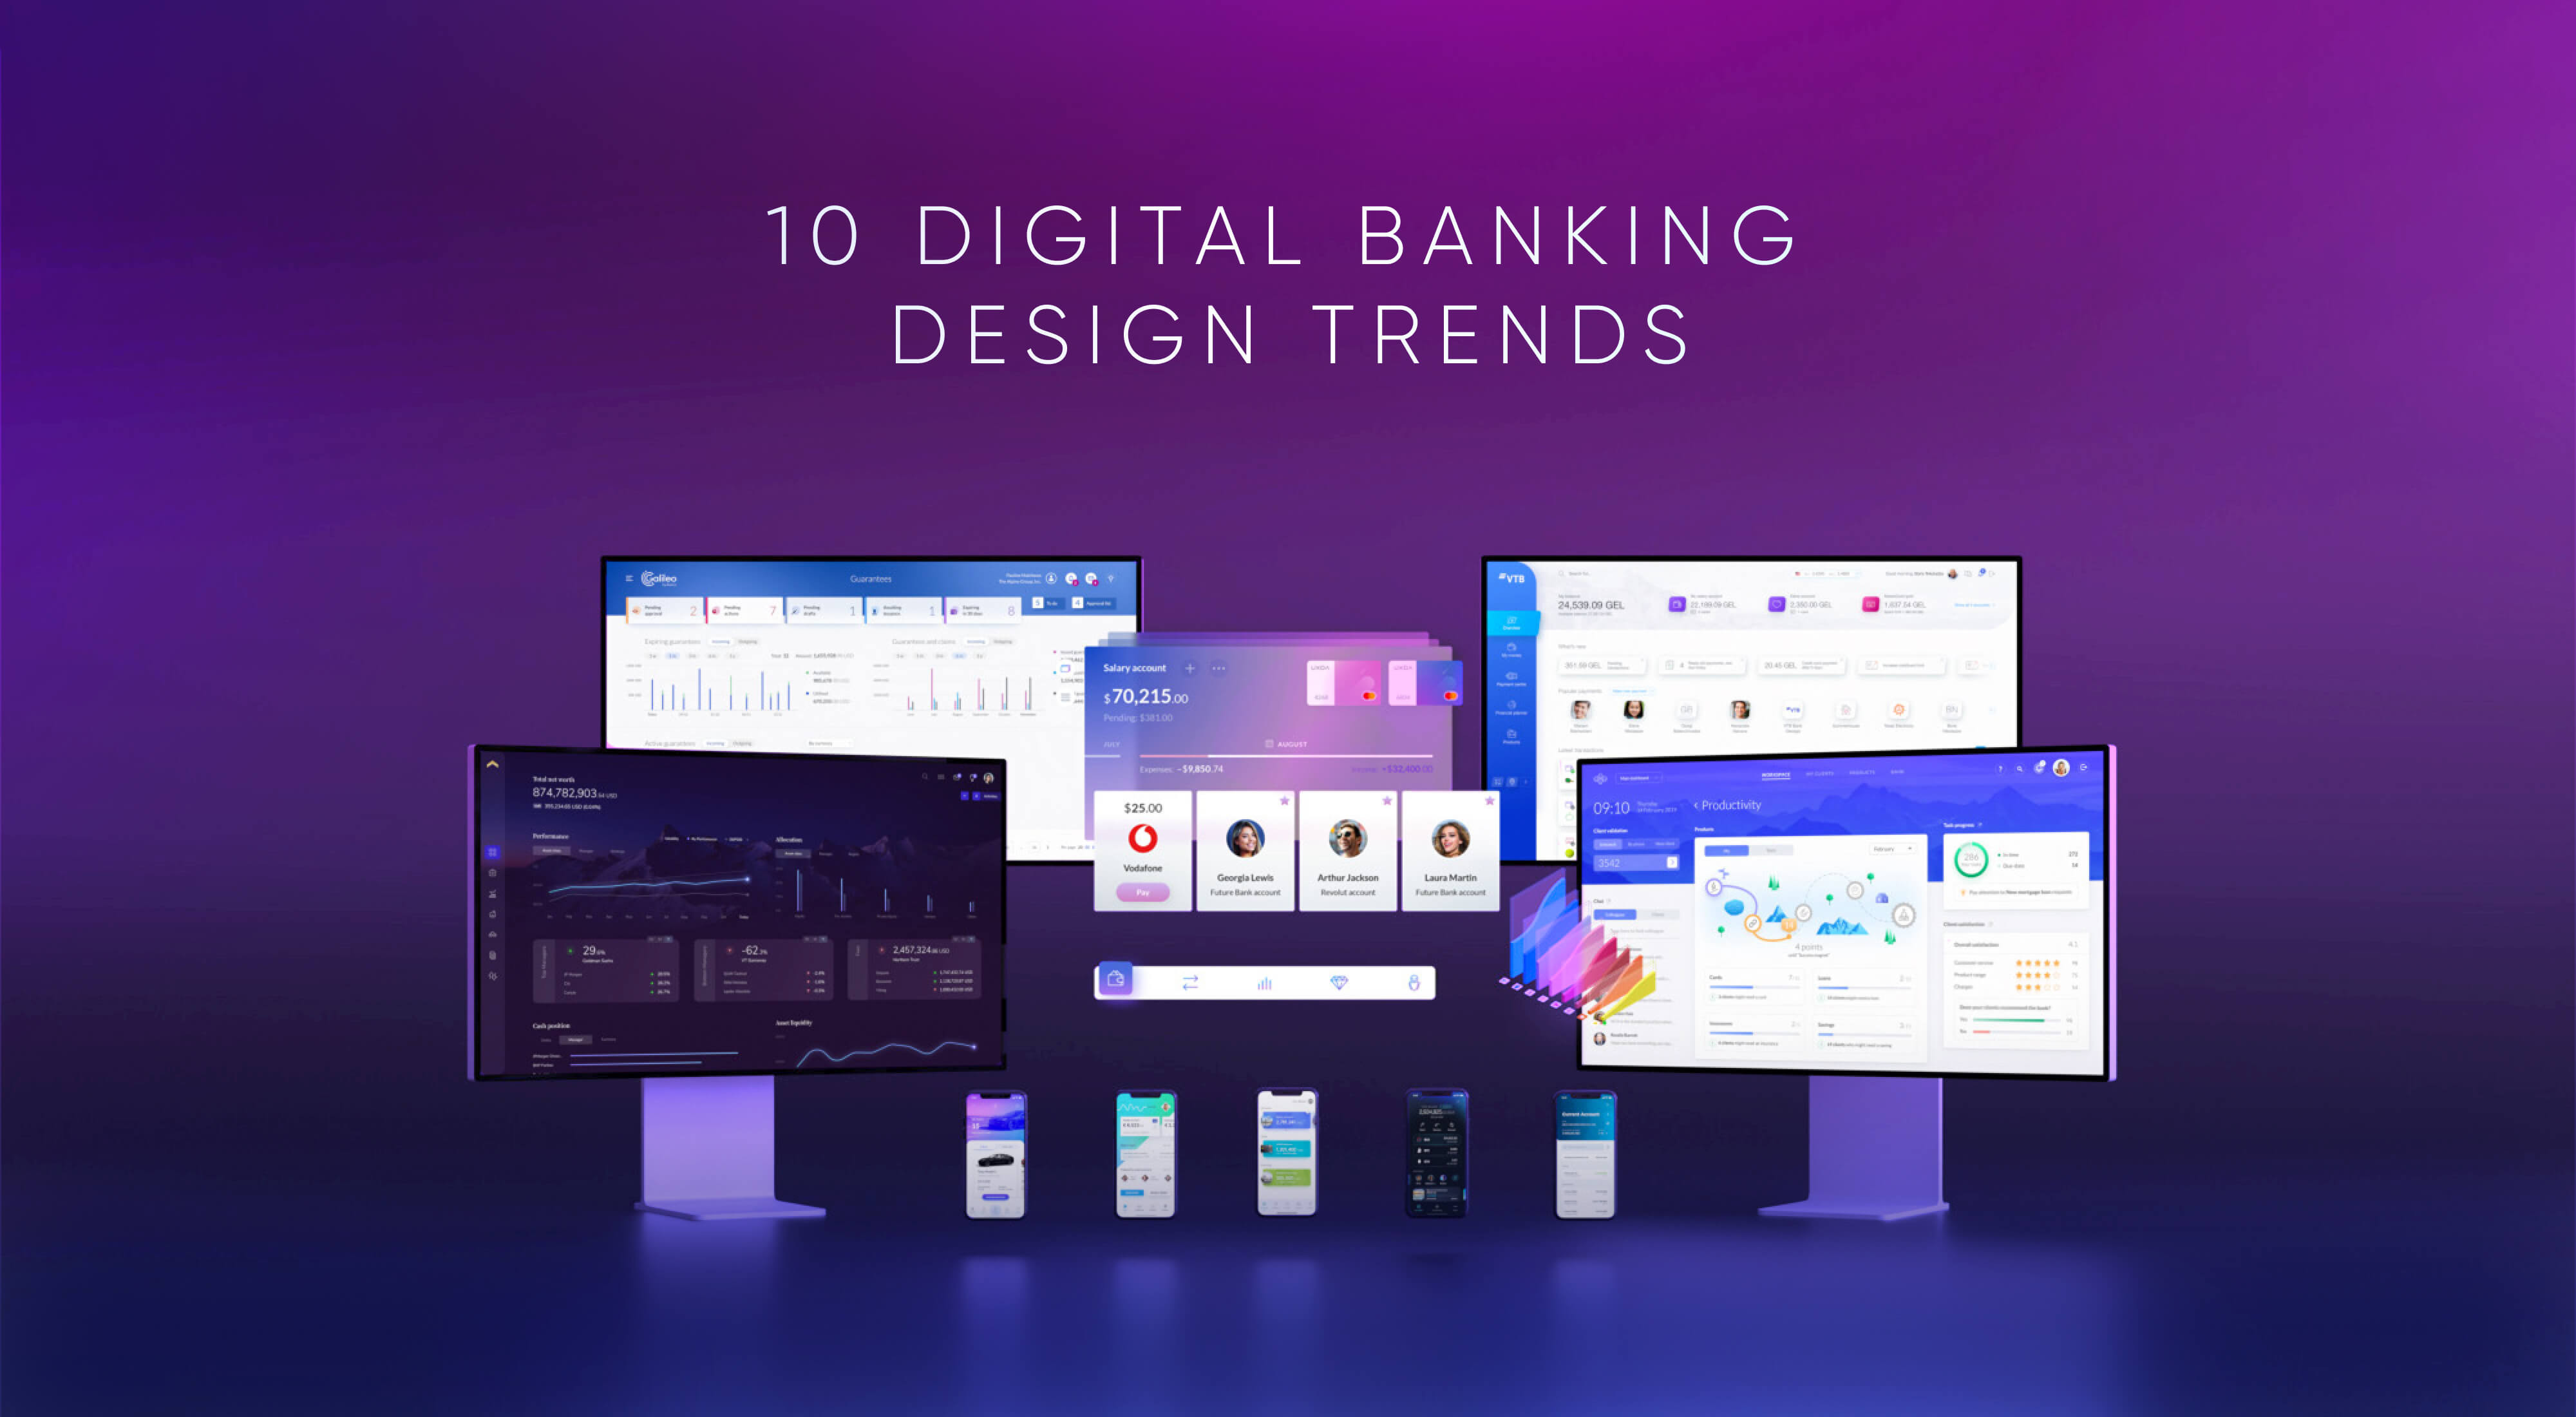 Digital UX Design Trends: 10 Banking Innovation Ideas